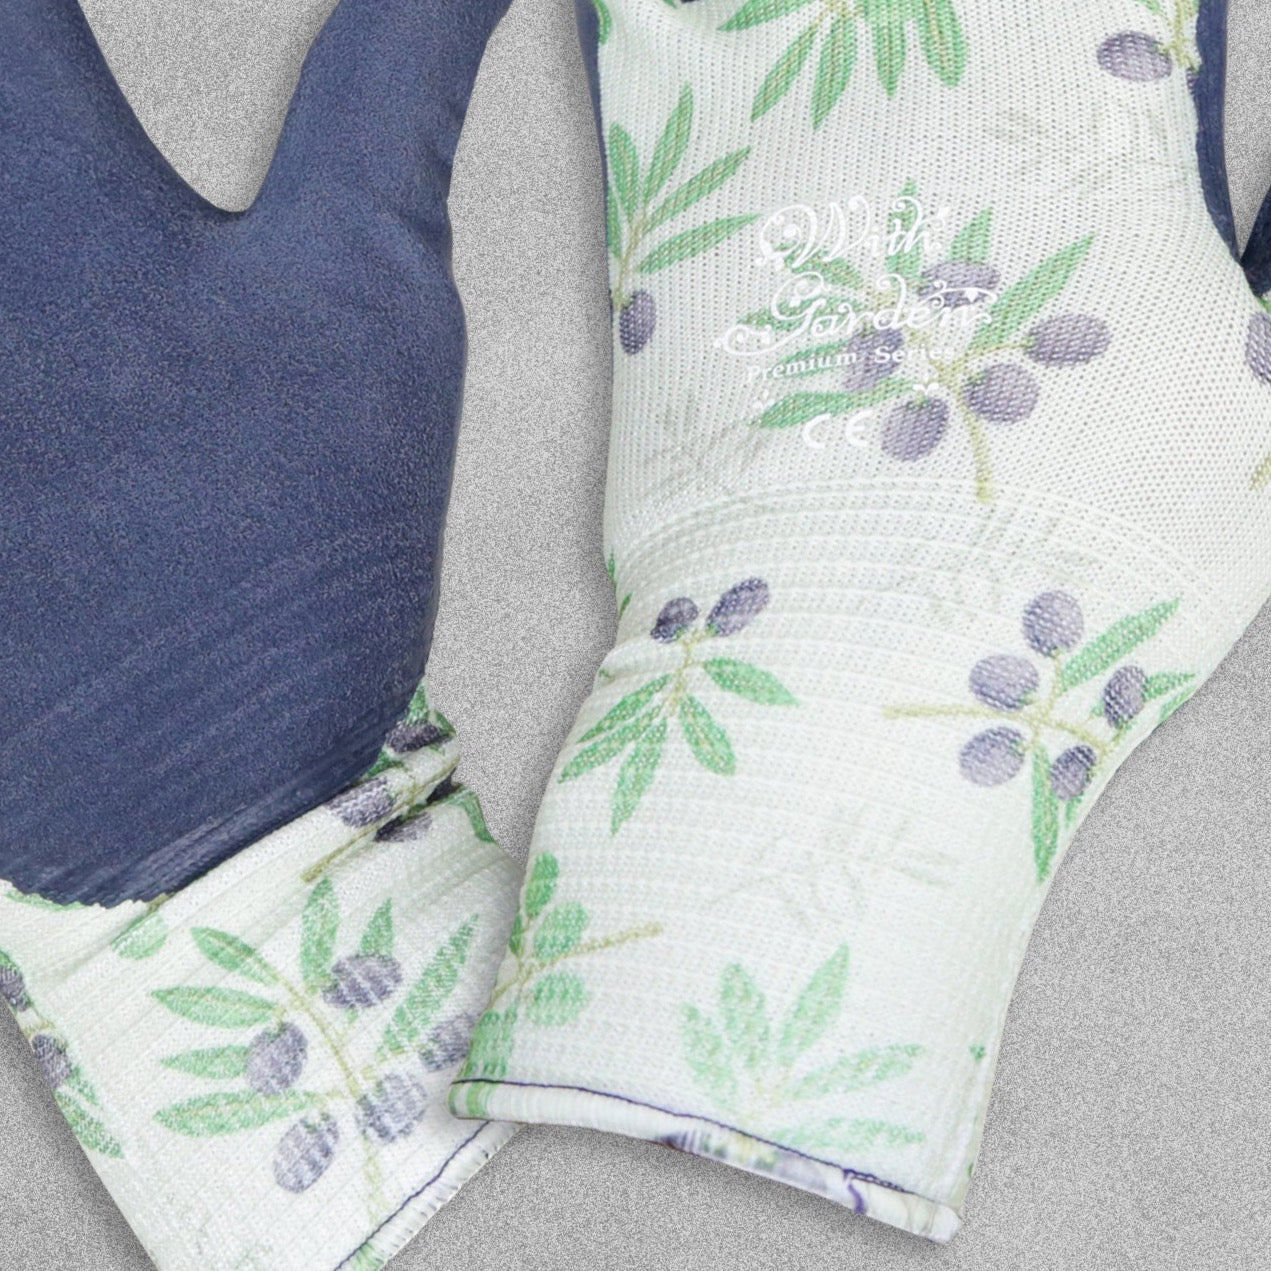 With Garden Premium Luminus Garden gloves - Olive design